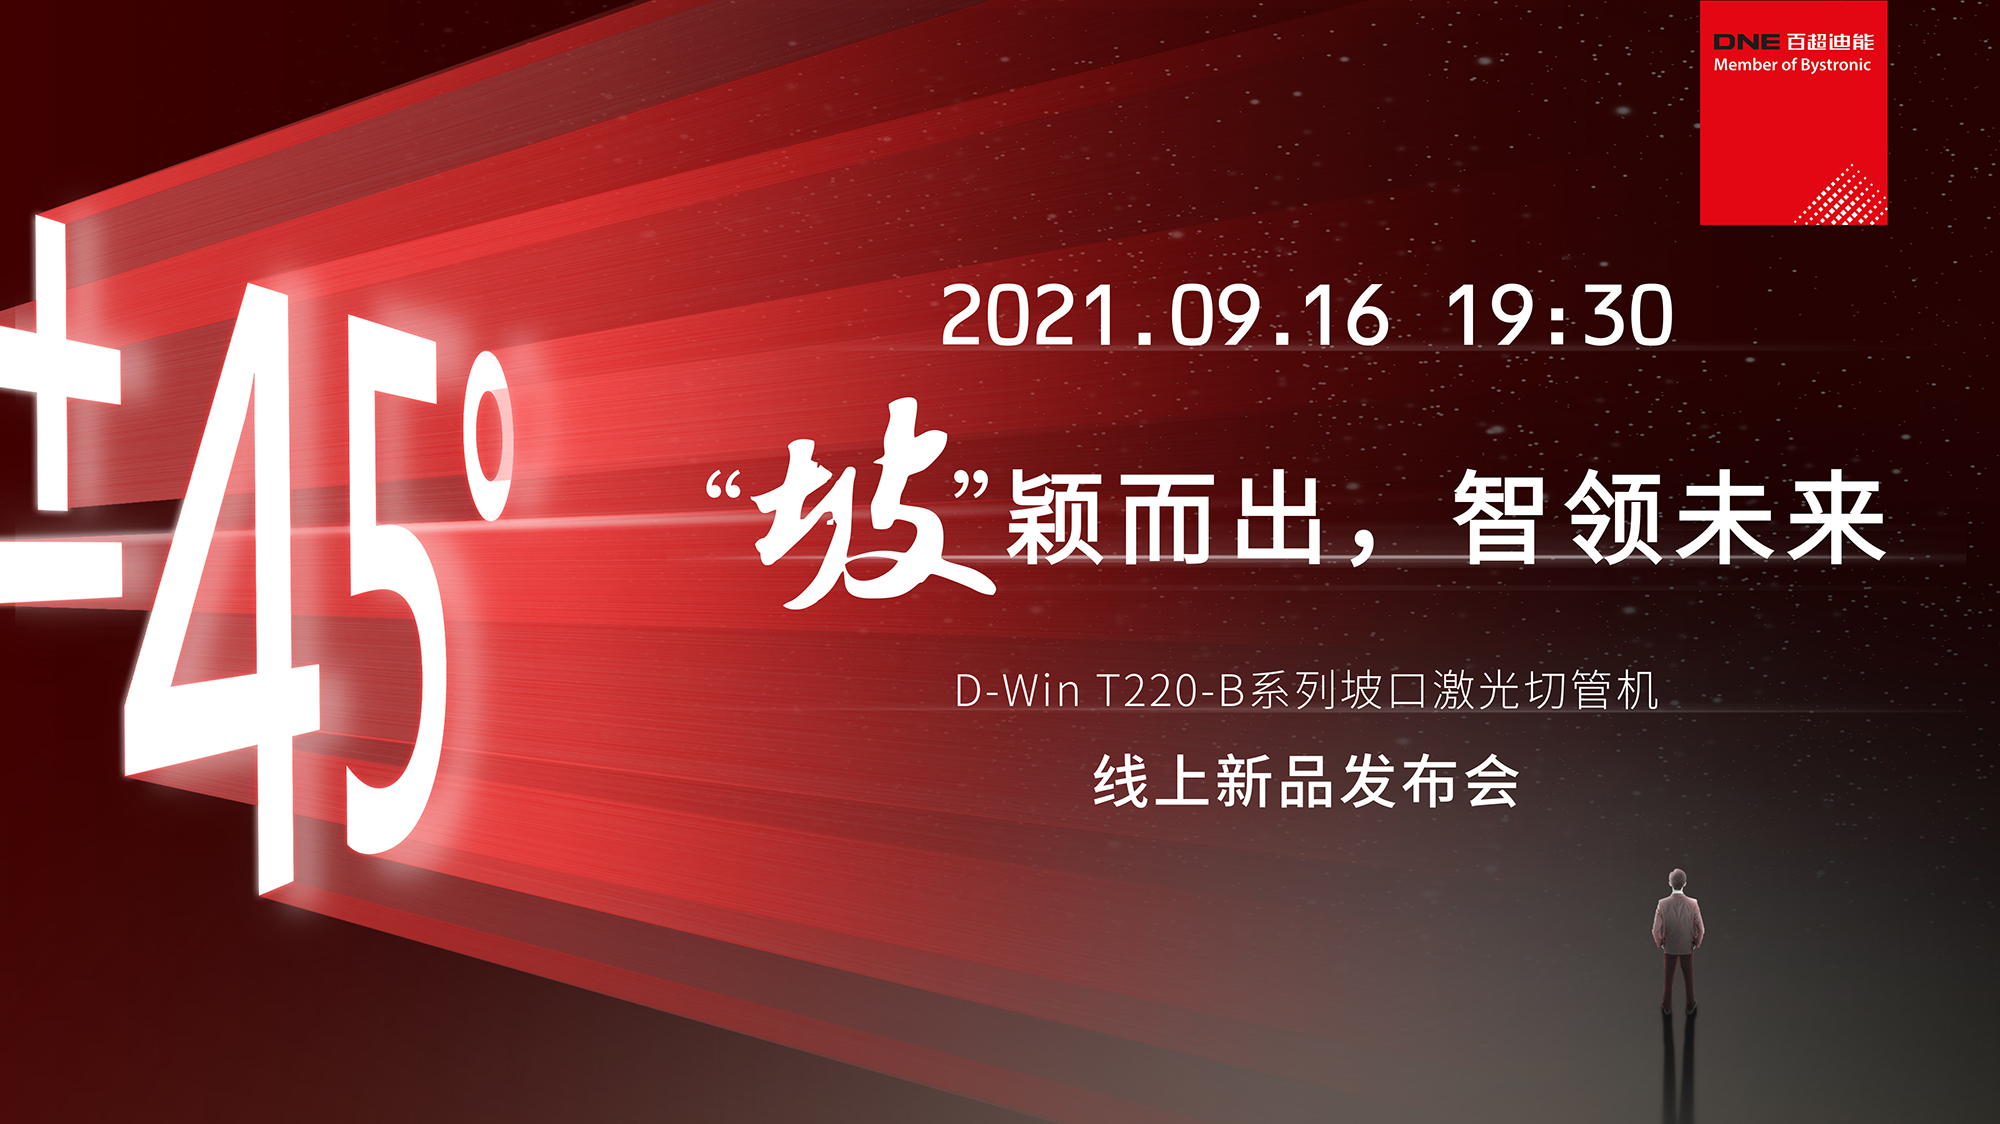 D-Win T220-B系列坡口激光切管机  线上发布会官宣  9月16日 19：30不见不散